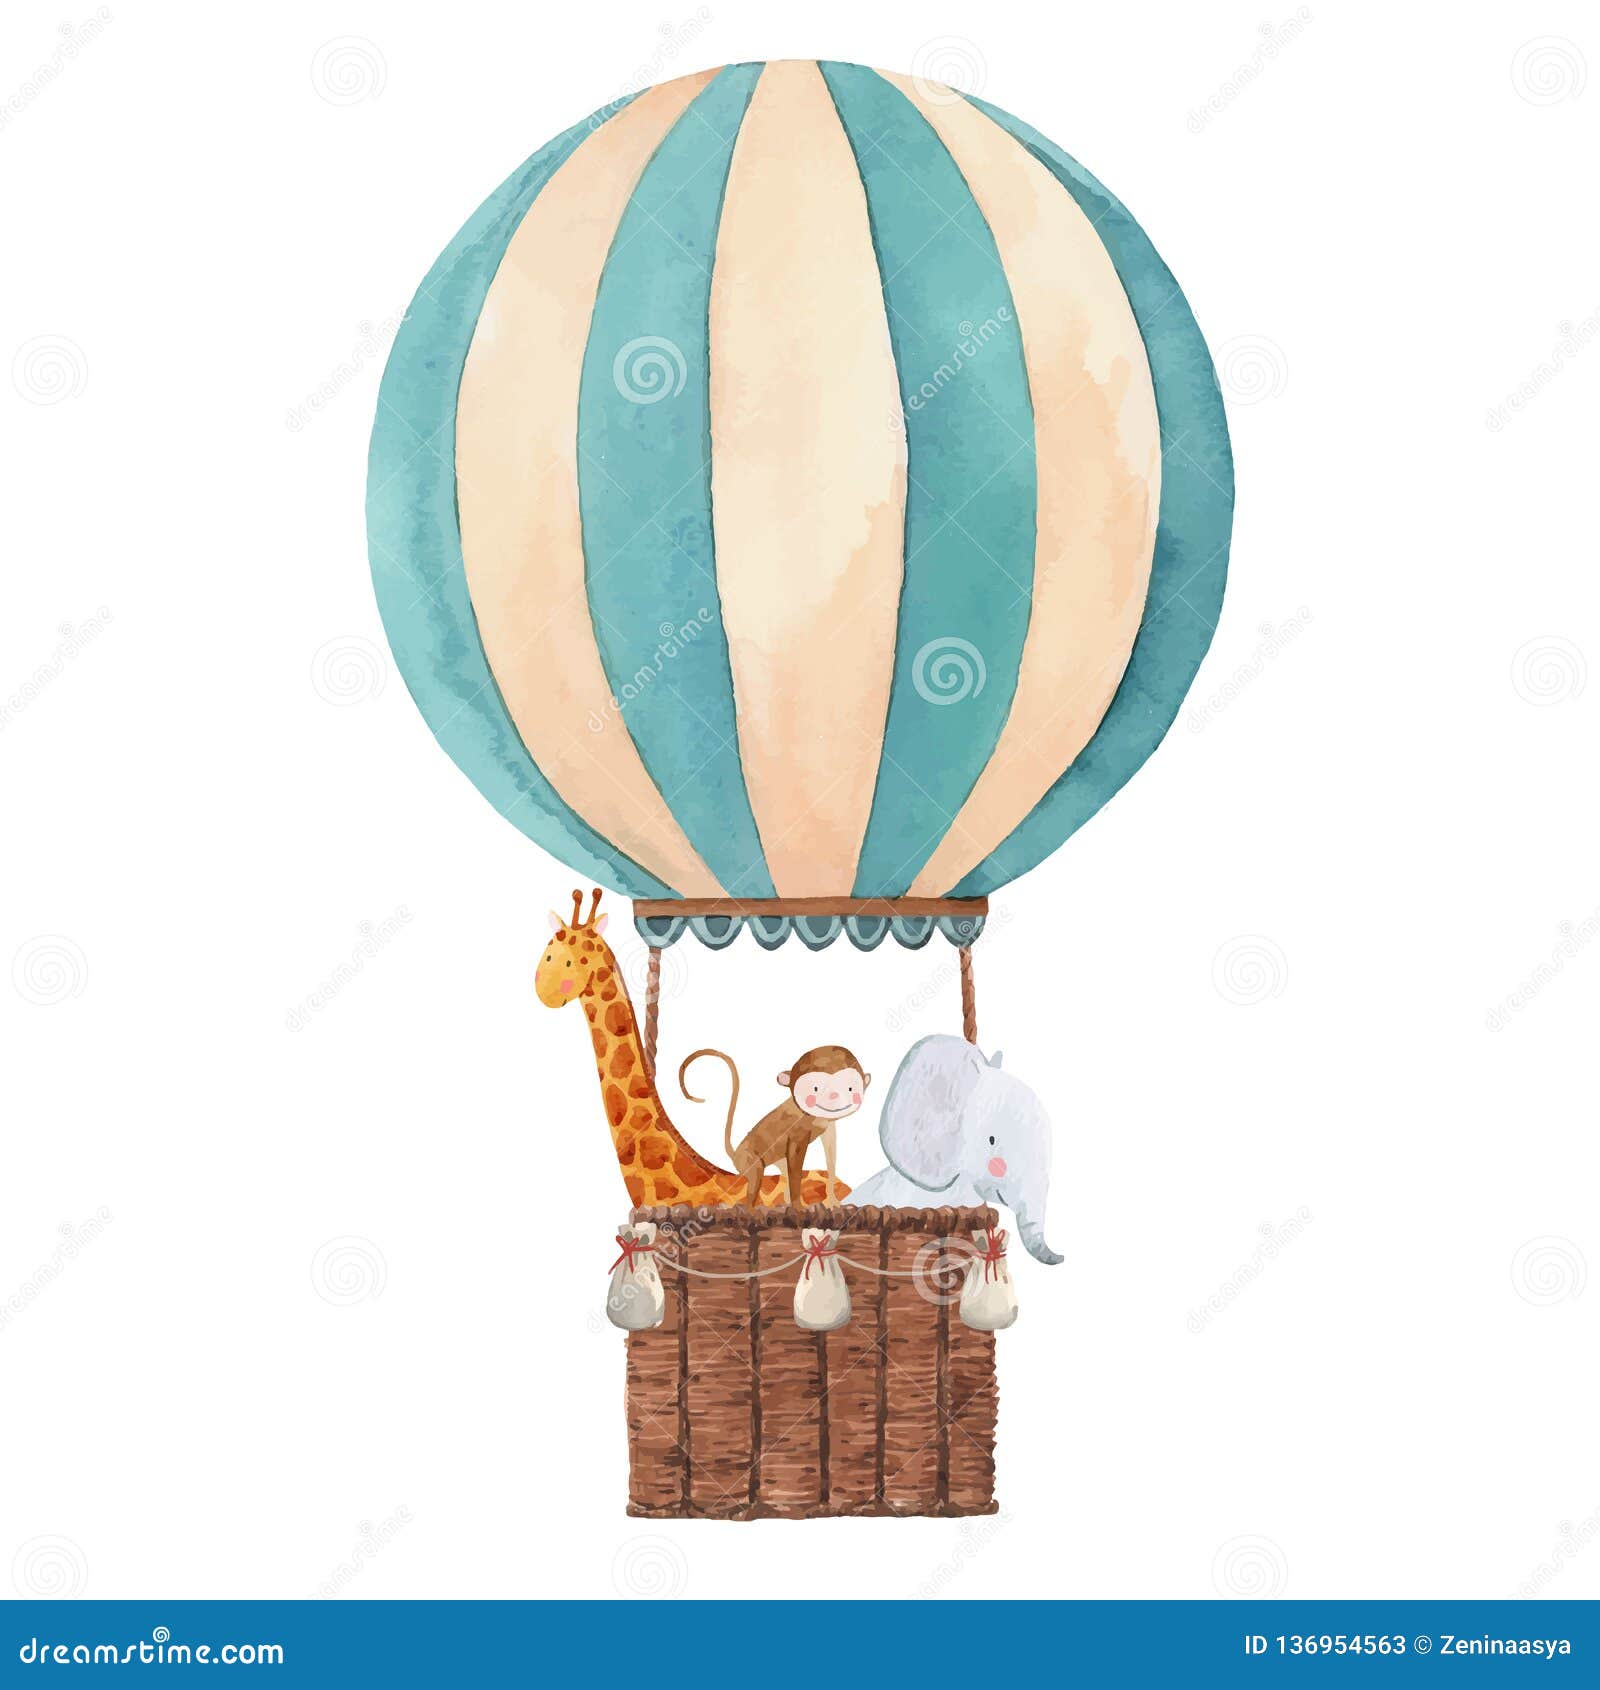 watercolor air baloon  